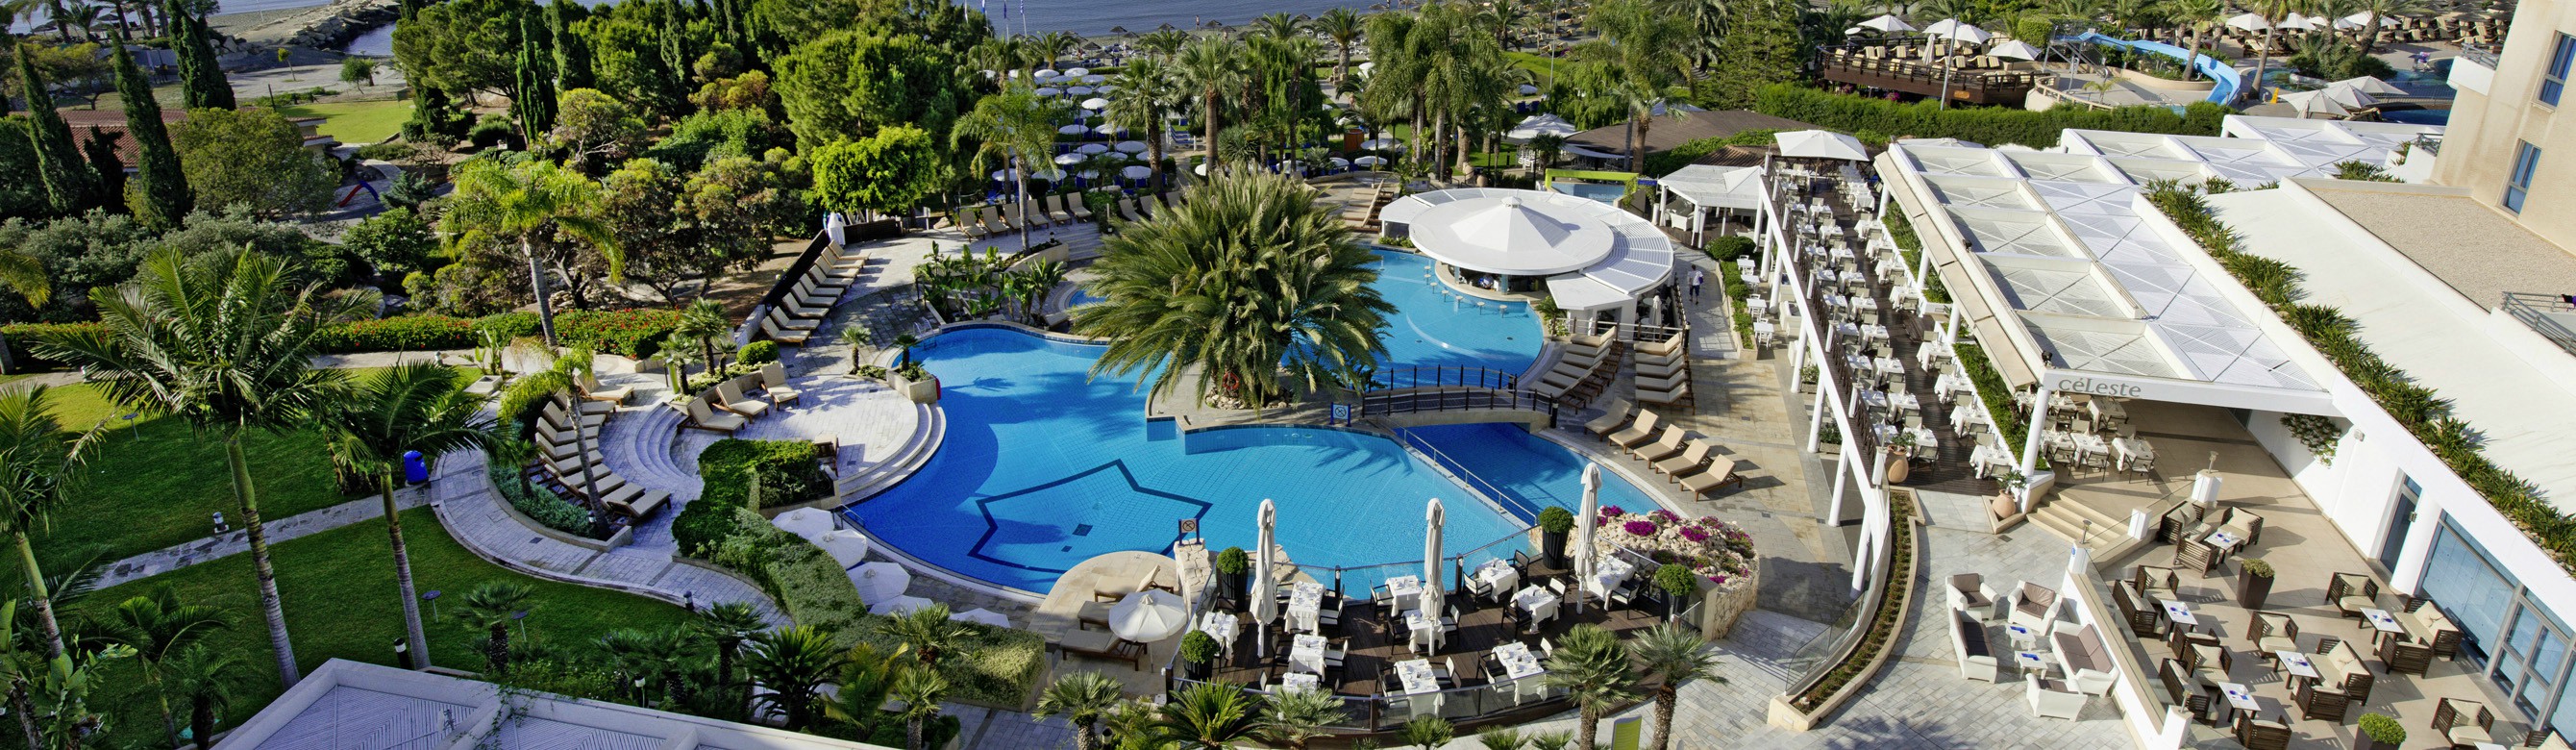 Book your wedding day in Mediterranean Beach Hotel Limassol